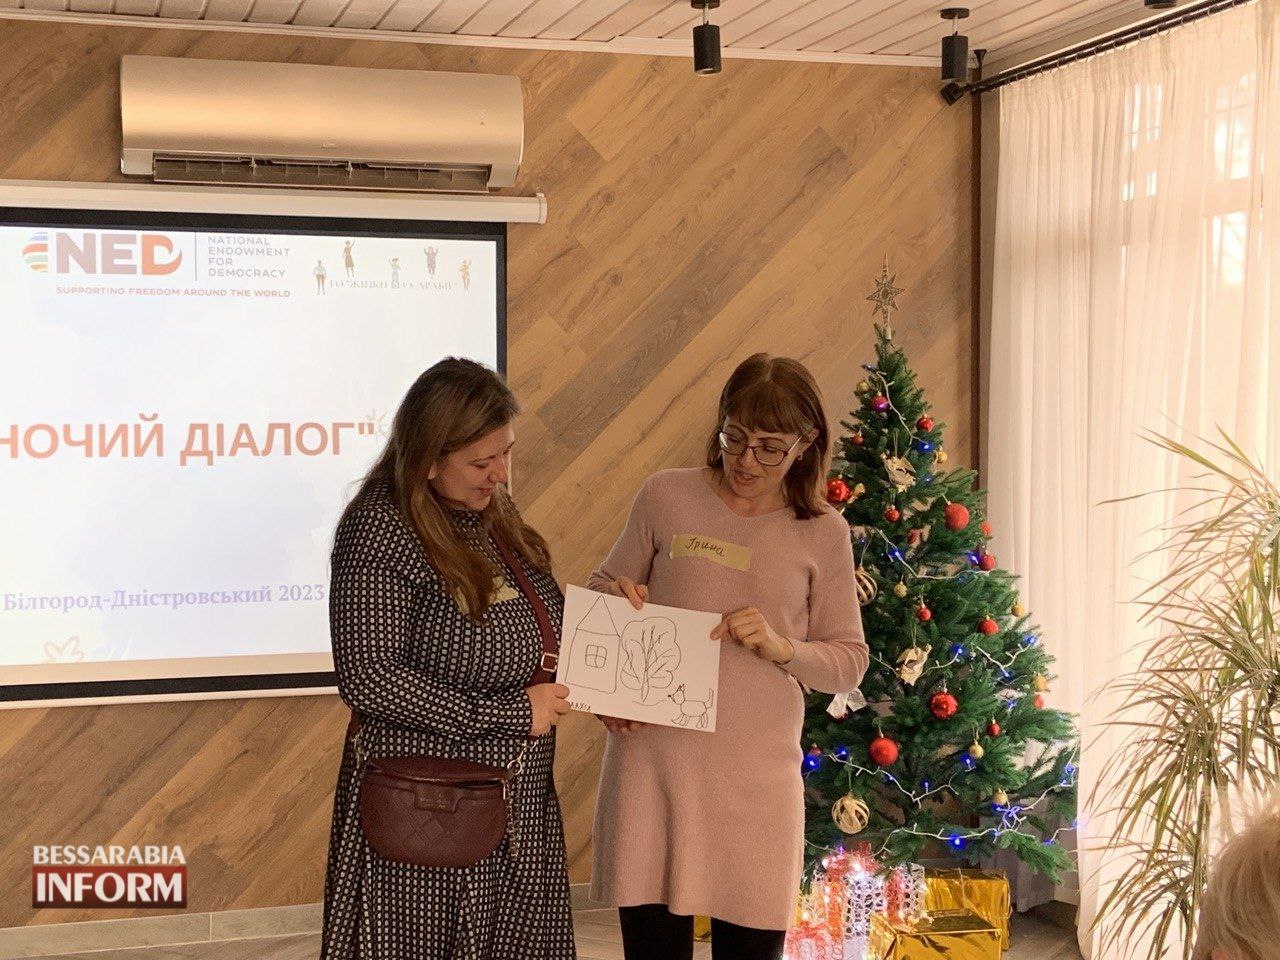 Точка опоры: в Белгороде-Днестровском воплотили мощный проект, извлеченный из депрессионного состояния десятки женщин